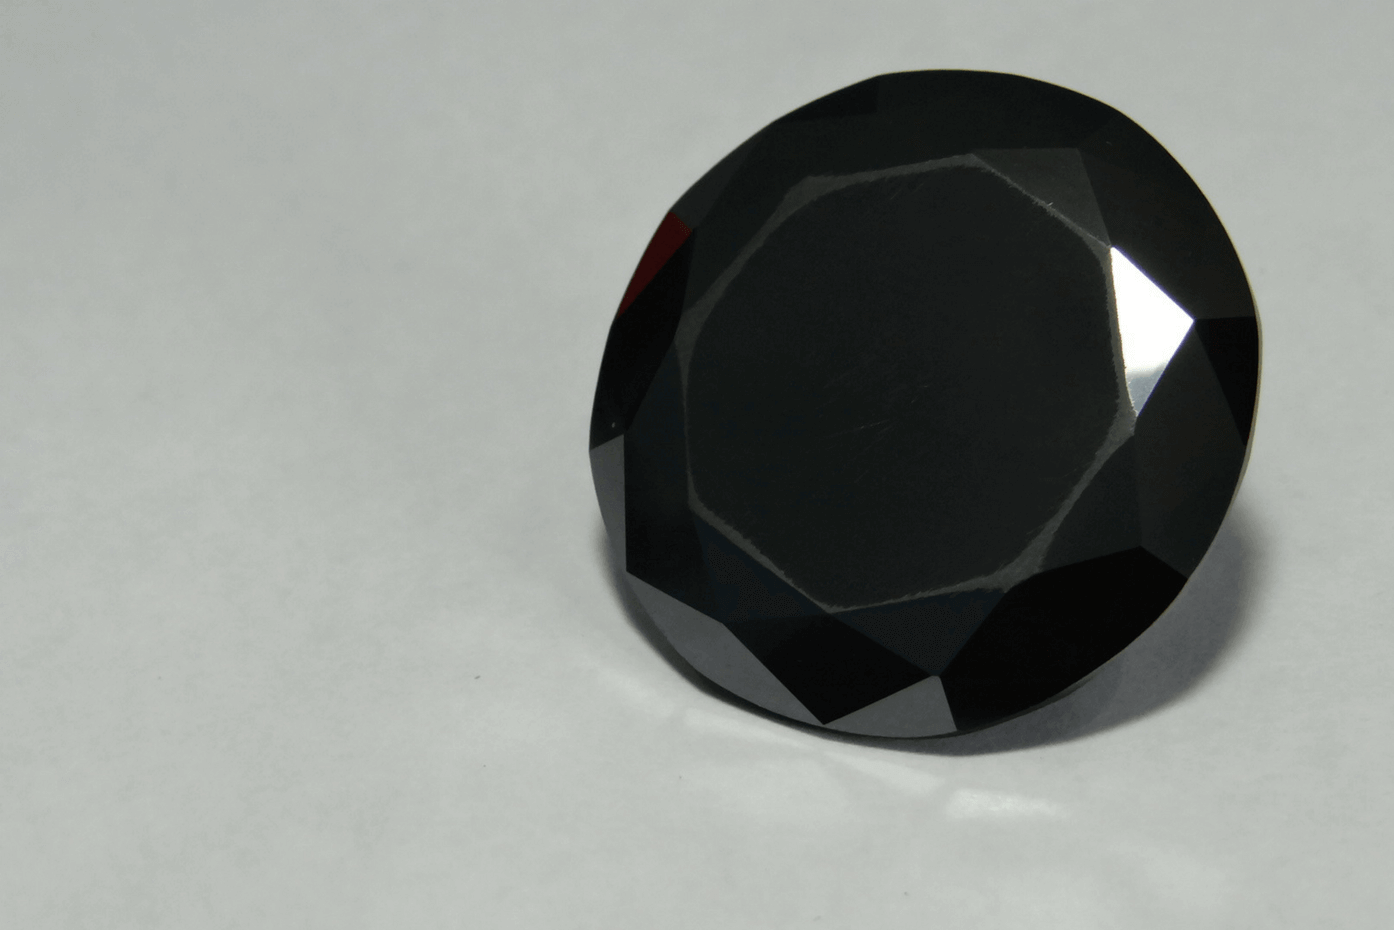 The Shaan-e-Kolta is a rare black diamond